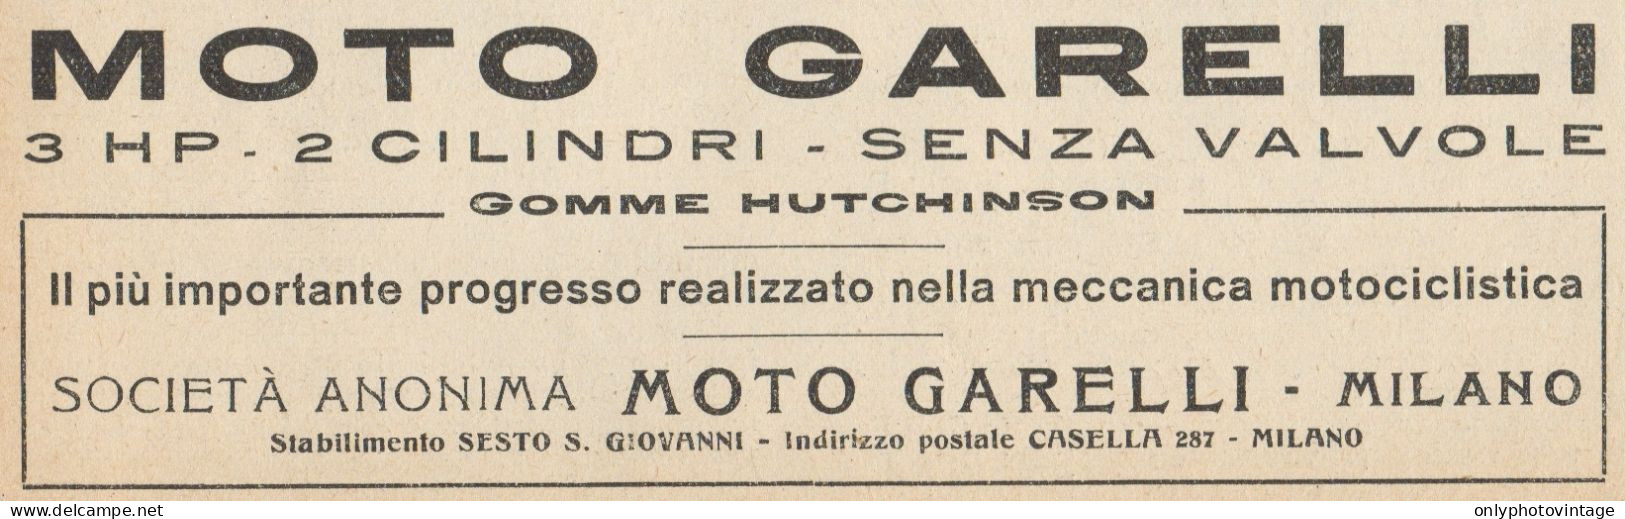 Moto GARELLI 3 HP - Pubblicità D'epoca - 1921 Old Advertising - Pubblicitari